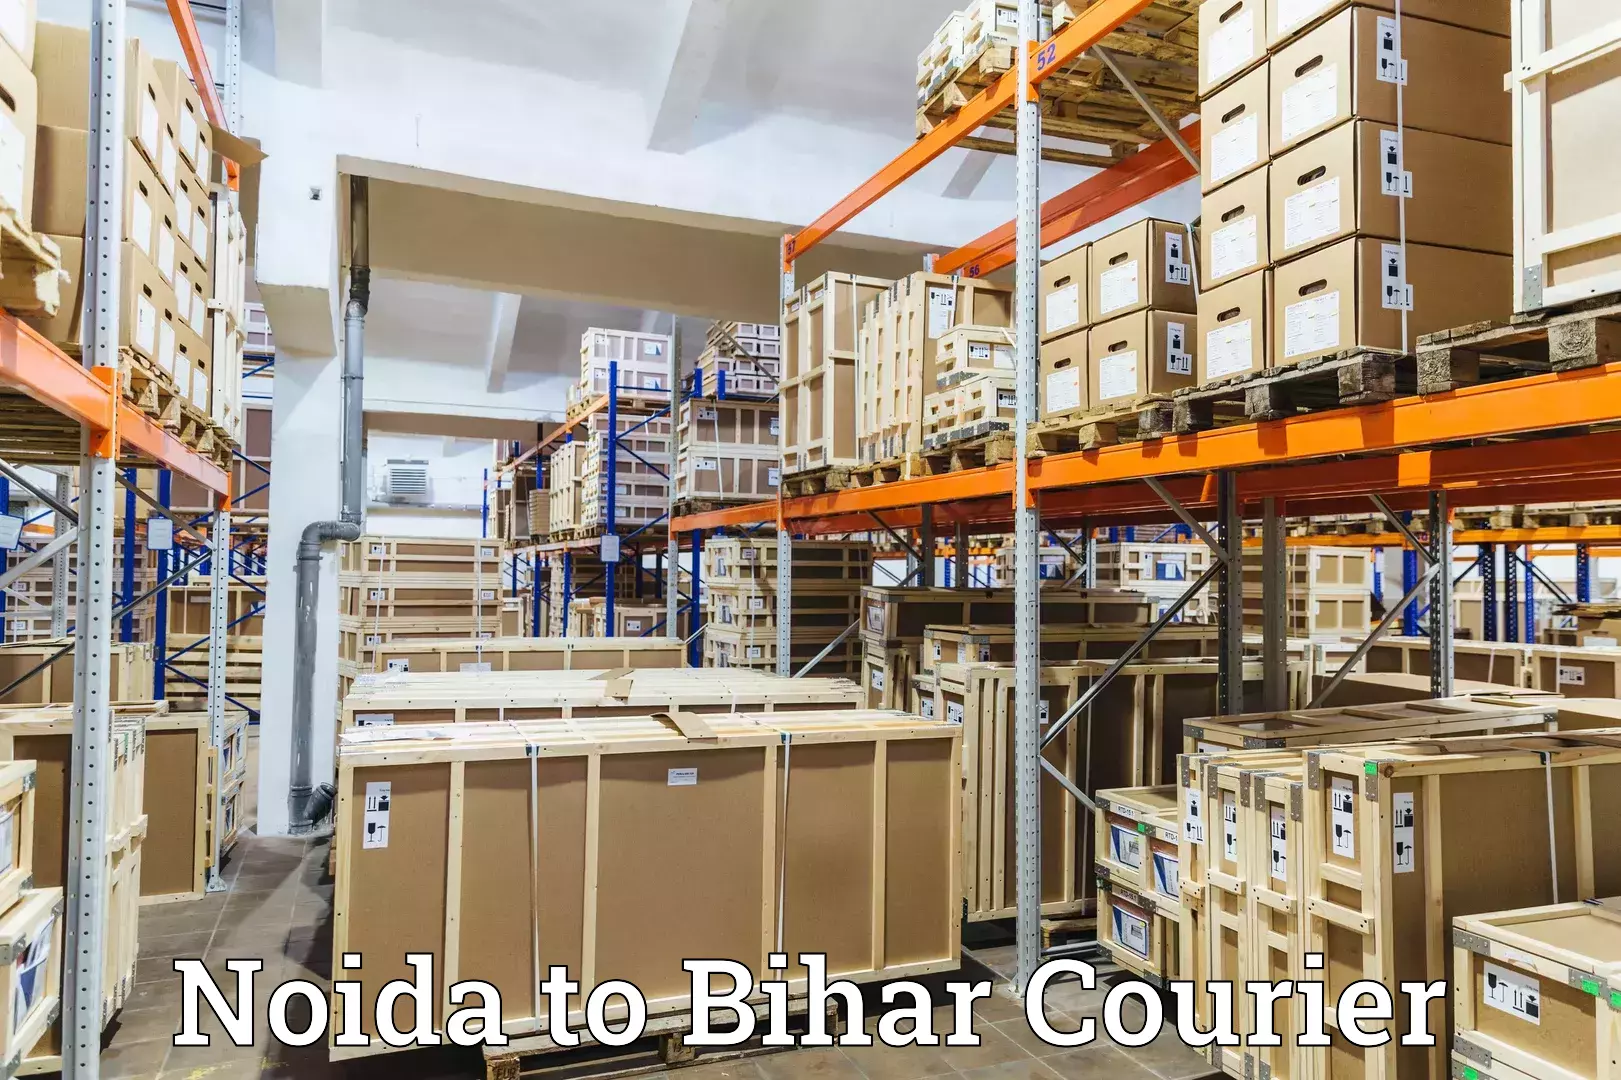 User-friendly courier app Noida to Bihar